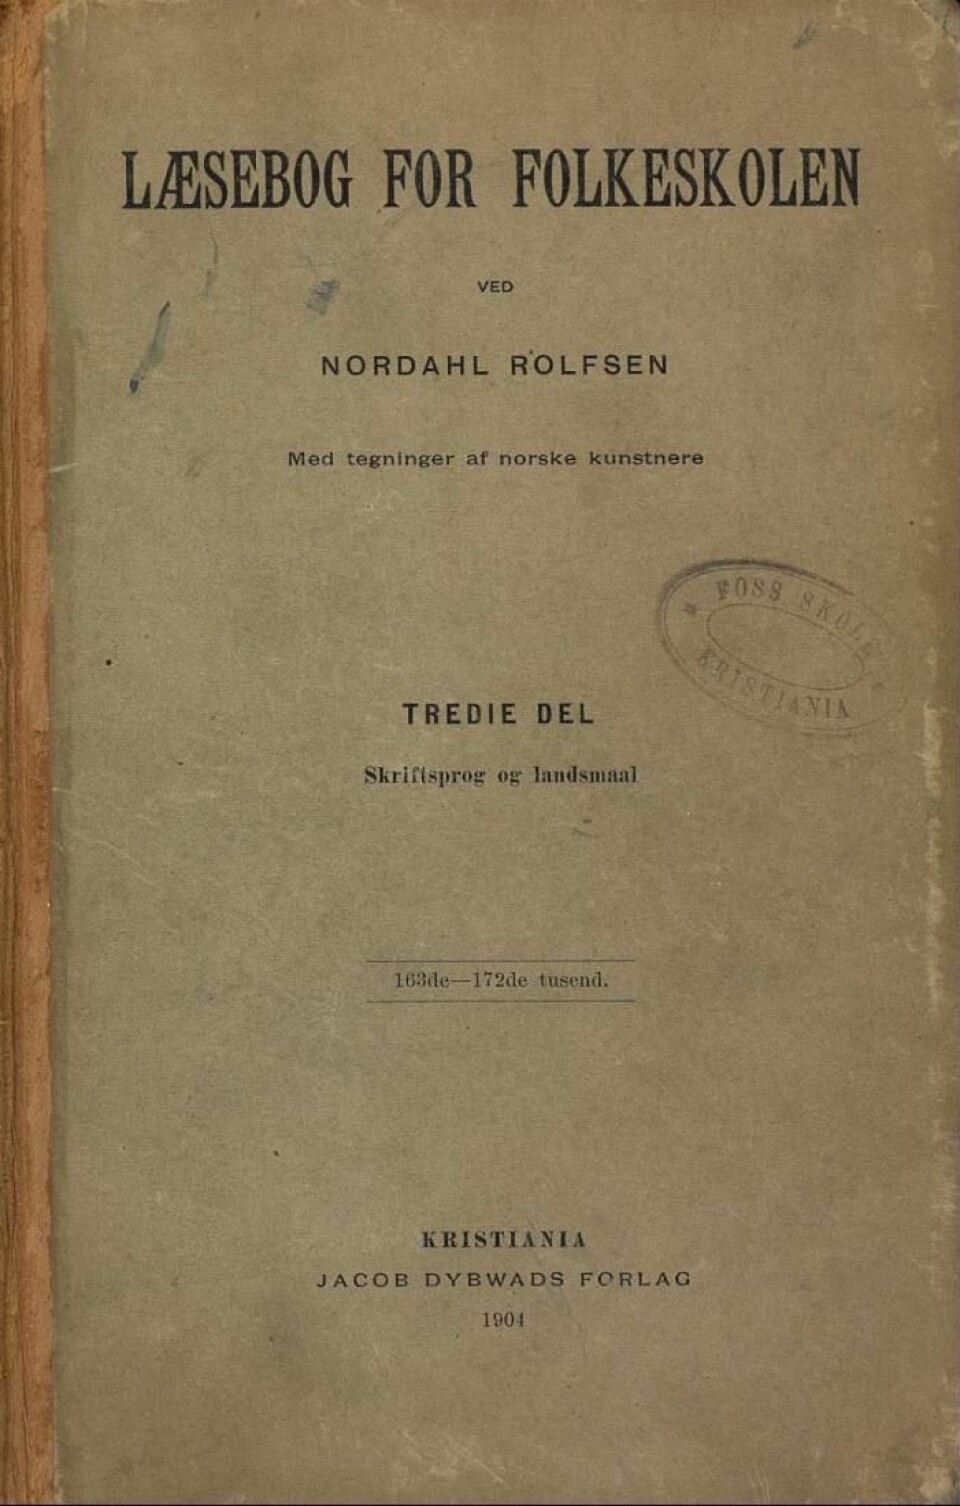 Læsebog for Folkeskolen av Nordahl Rolfsen.